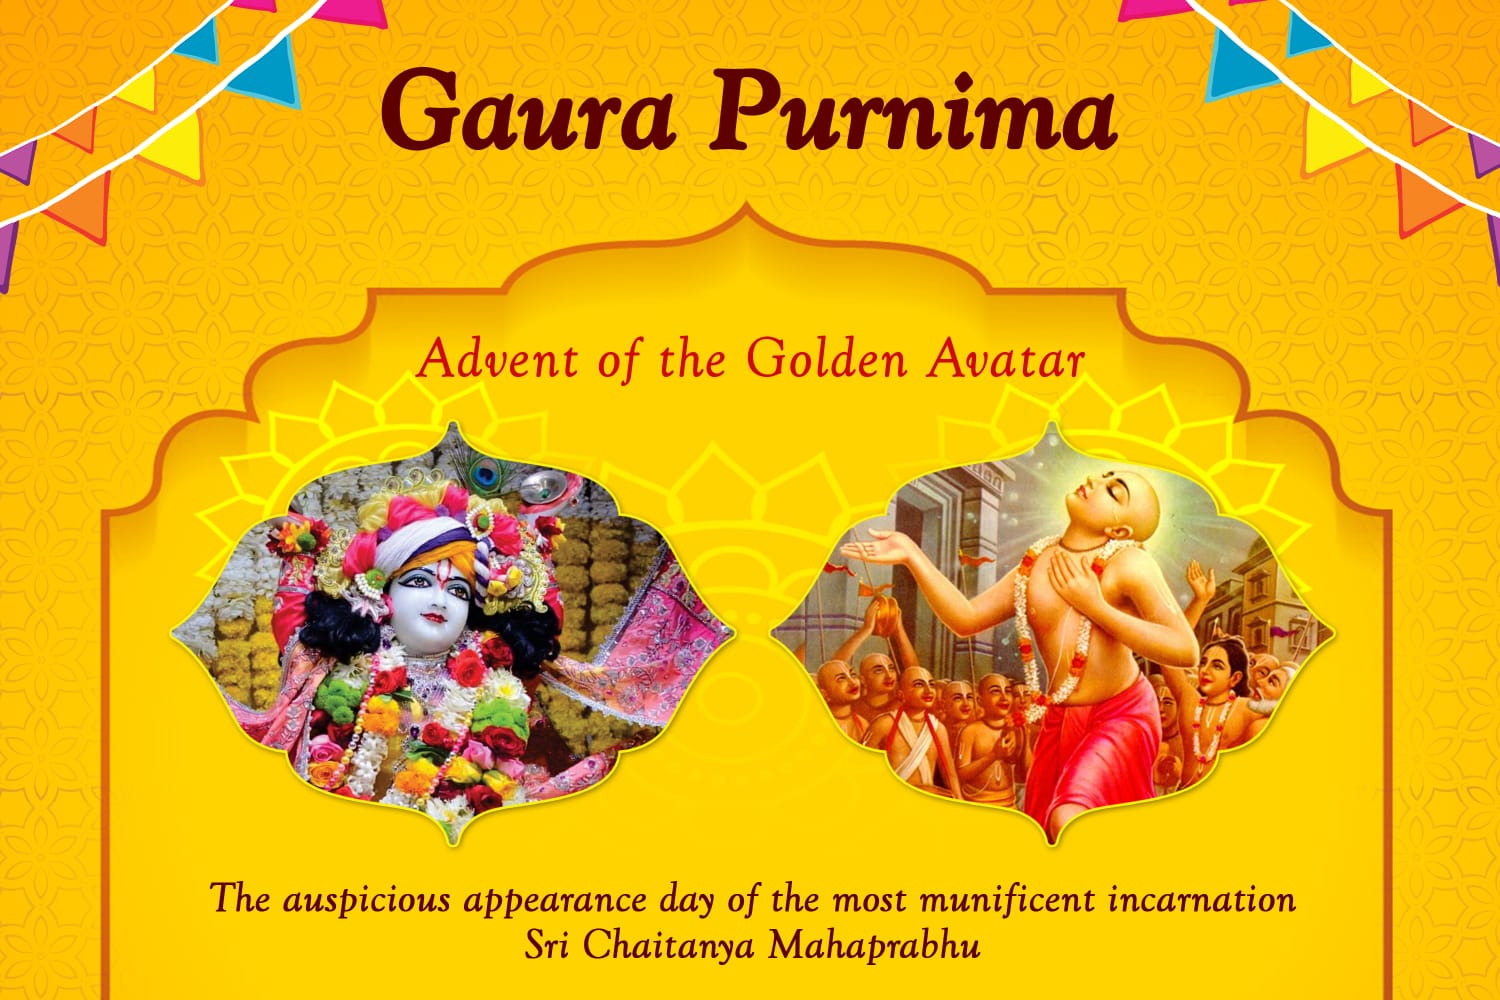 Sri Gaur Purnima Celebration 2022